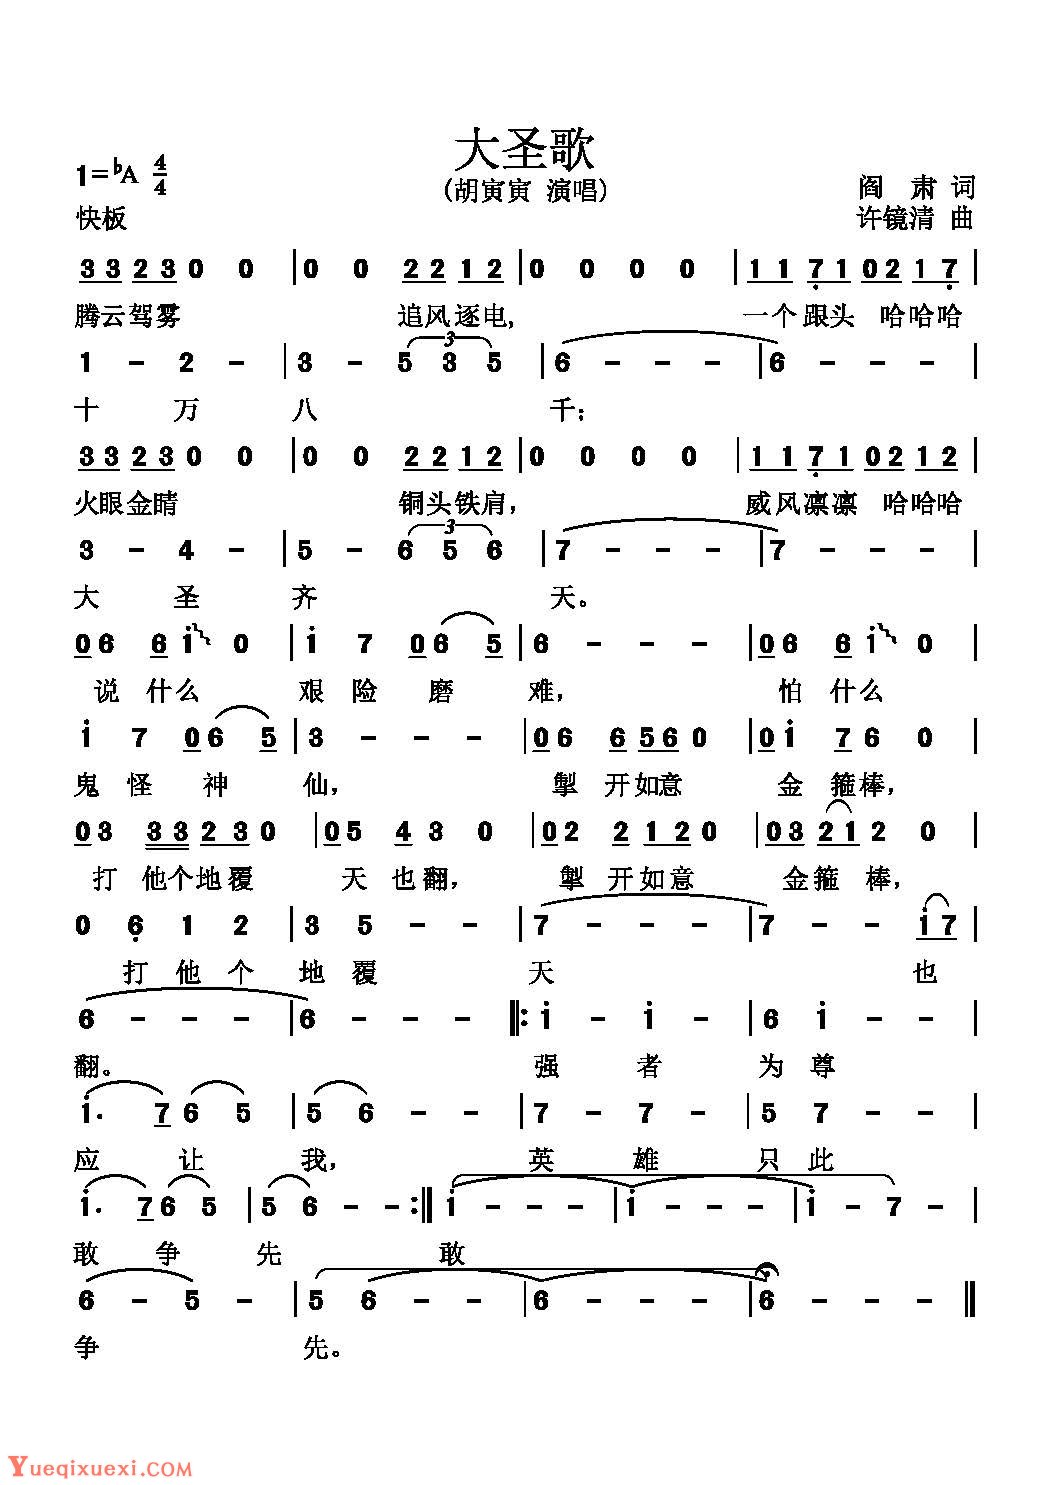 1986版《西游记》插曲与主题曲歌谱《大圣歌》胡寅寅/演唱